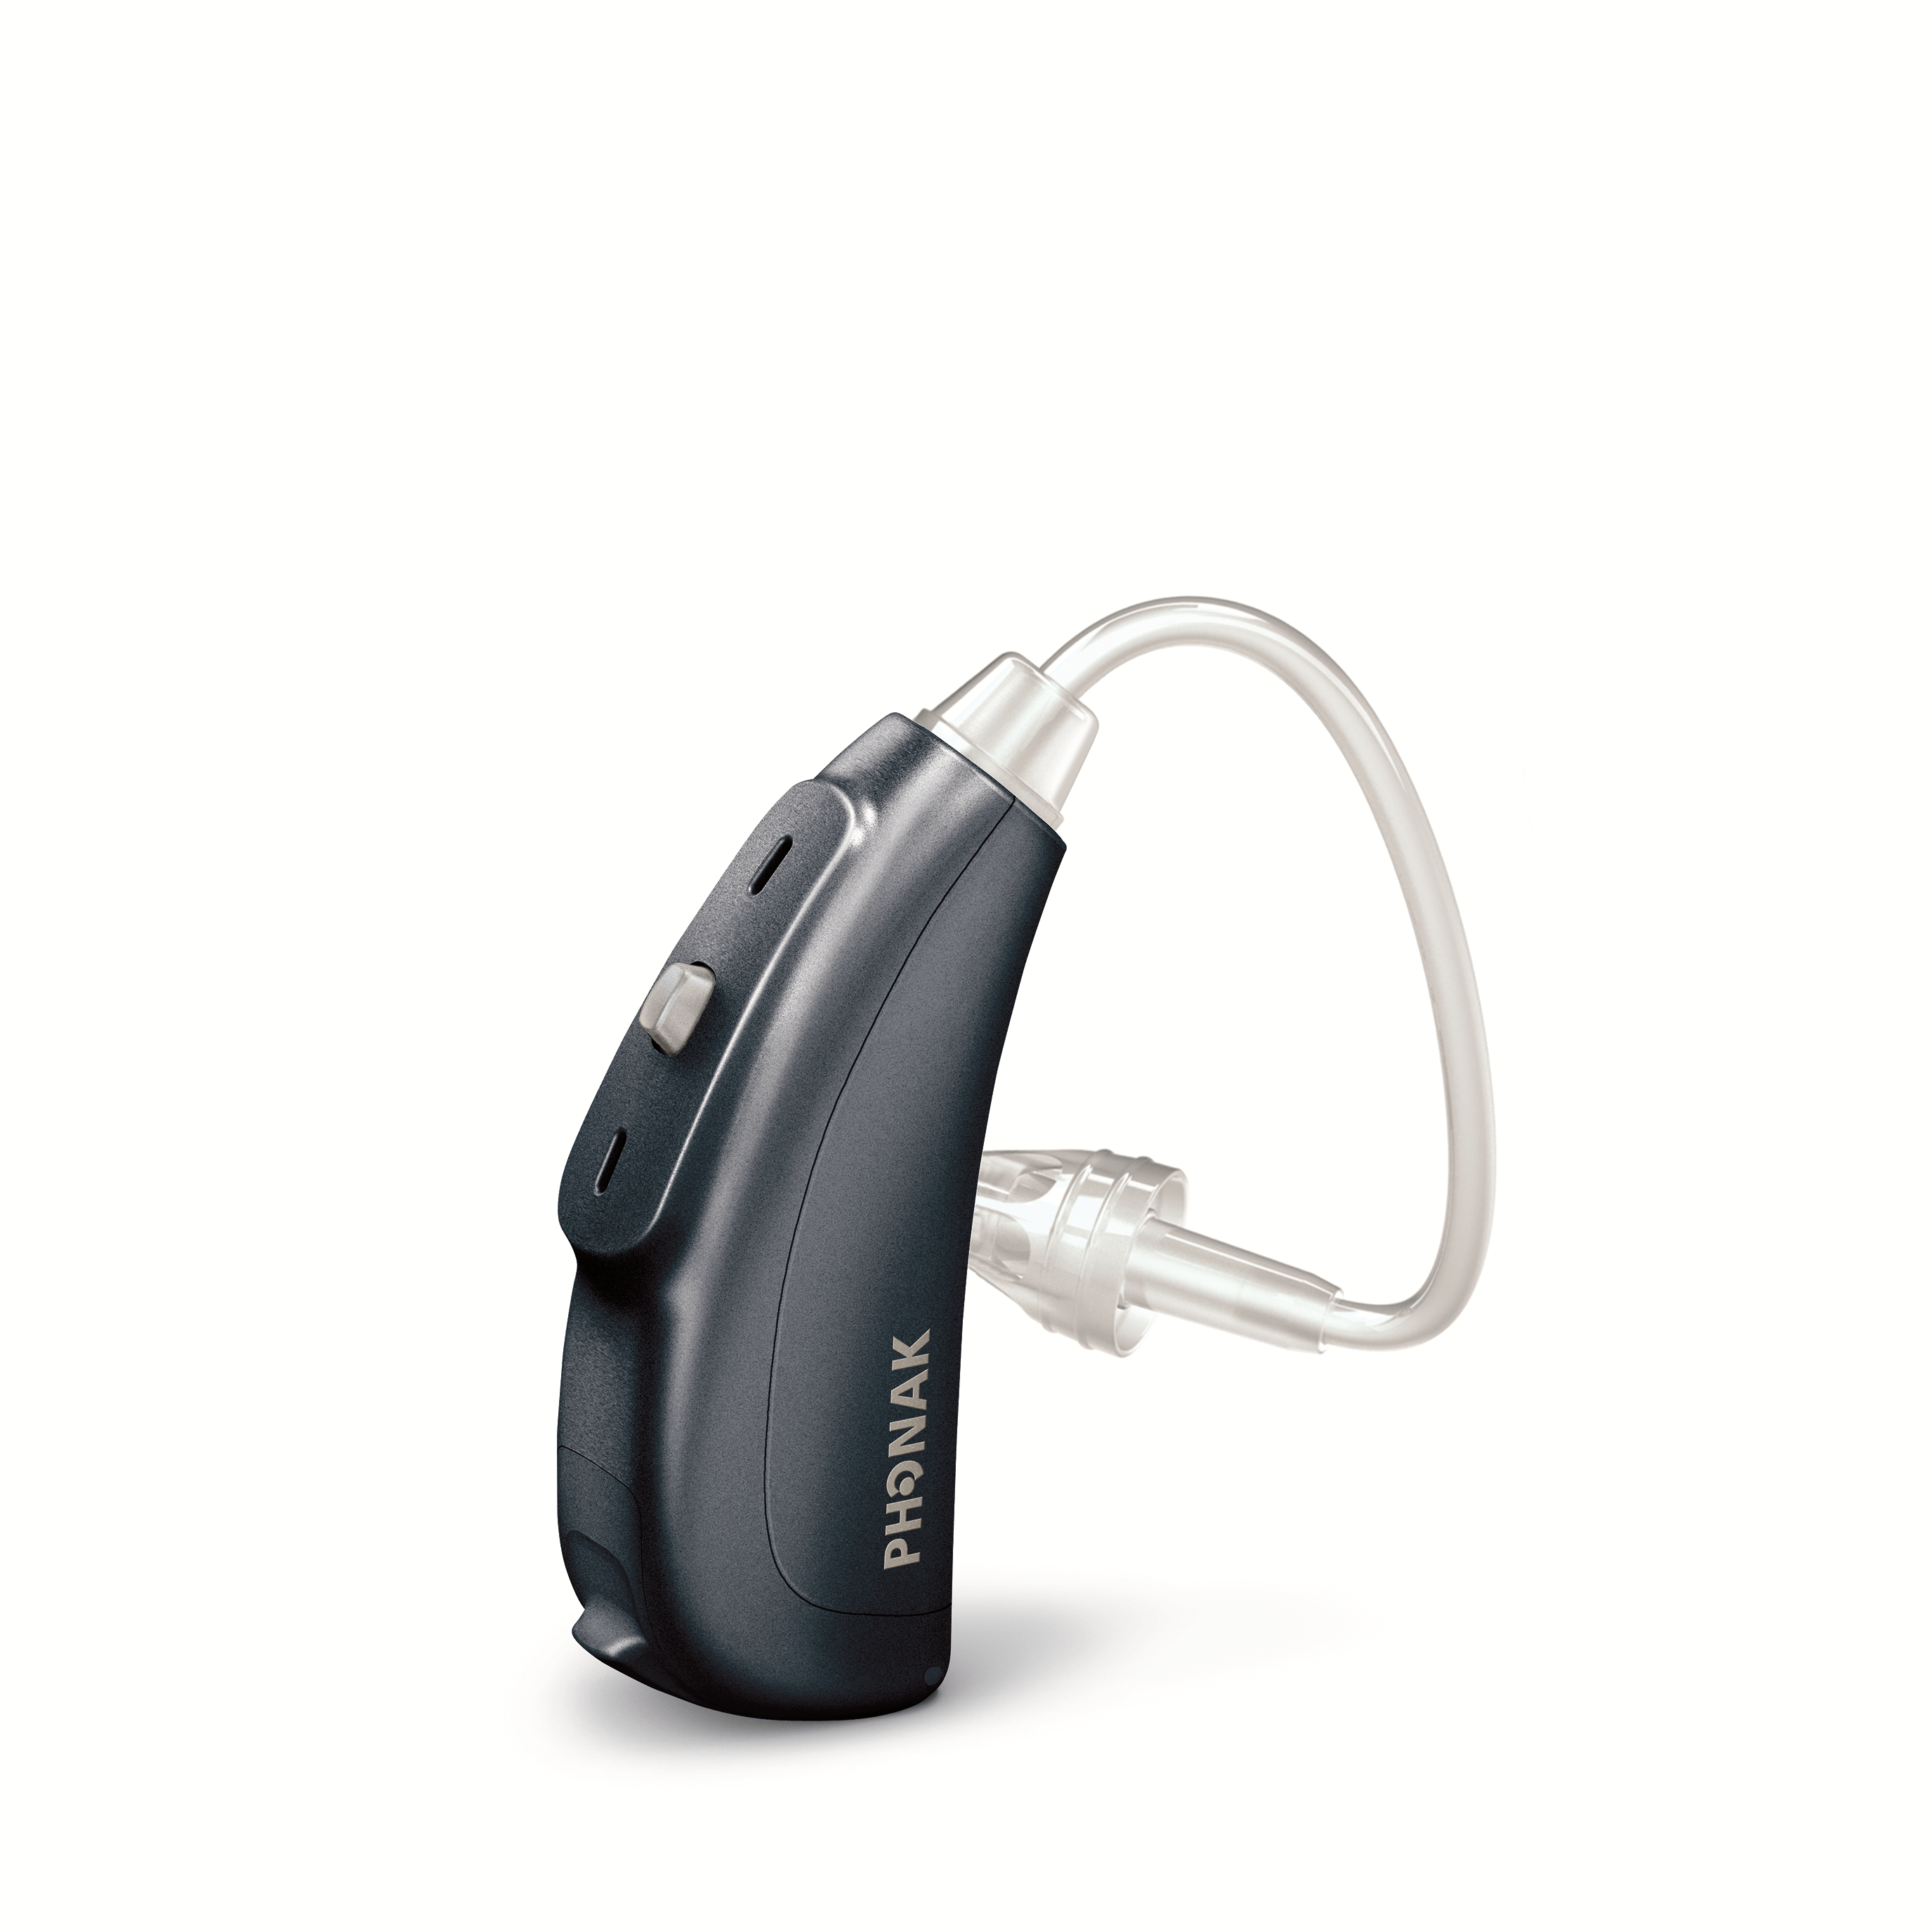 デンマークの補聴器メーカー、オーティコンから新発売。総合支援法対応補聴器オーティコンC100SPとは？